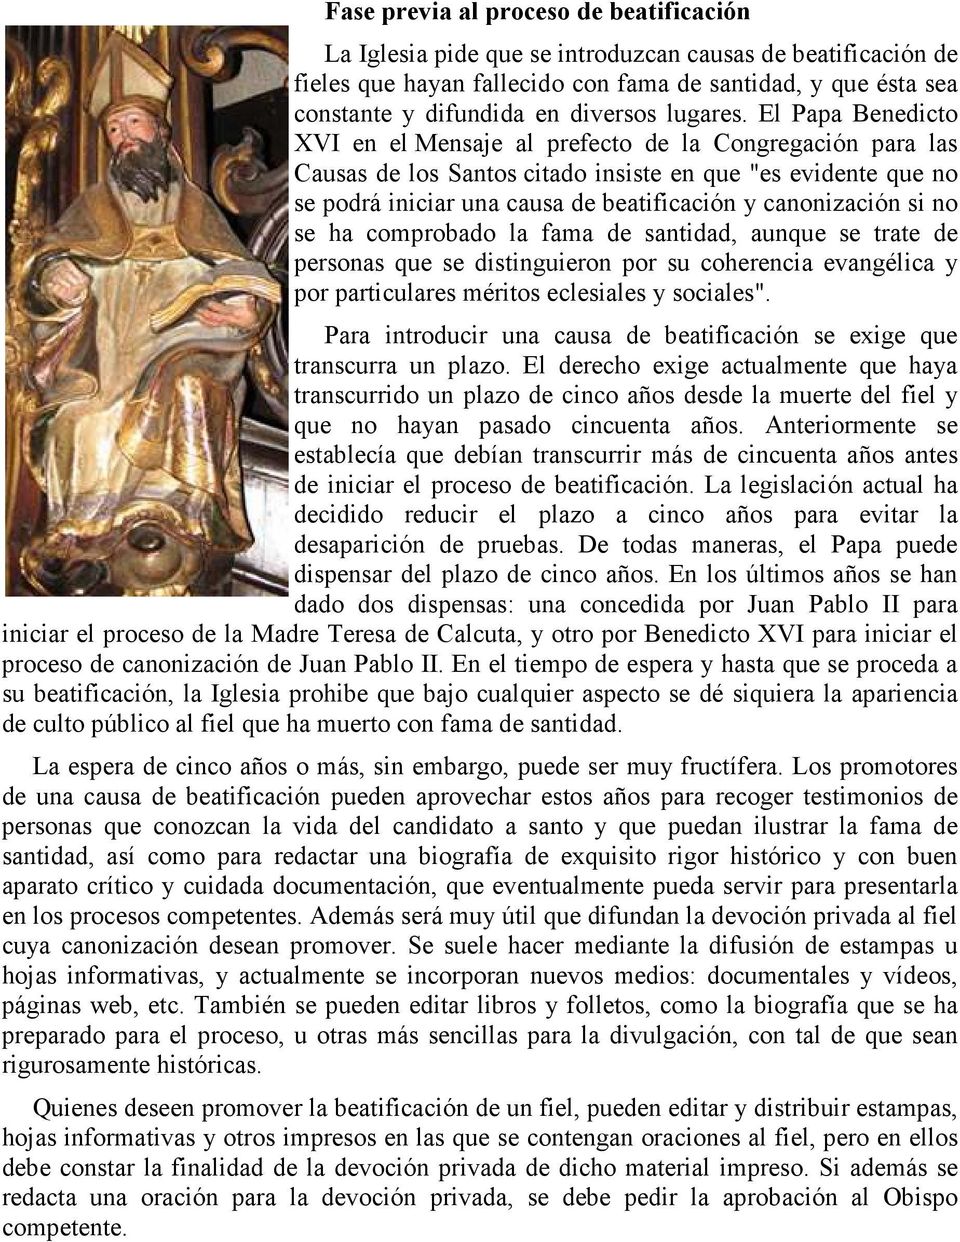 El Papa Benedicto XVI en el Mensaje al prefecto de la Congregación para las Causas de los Santos citado insiste en que "es evidente que no se podrá iniciar una causa de beatificación y canonización